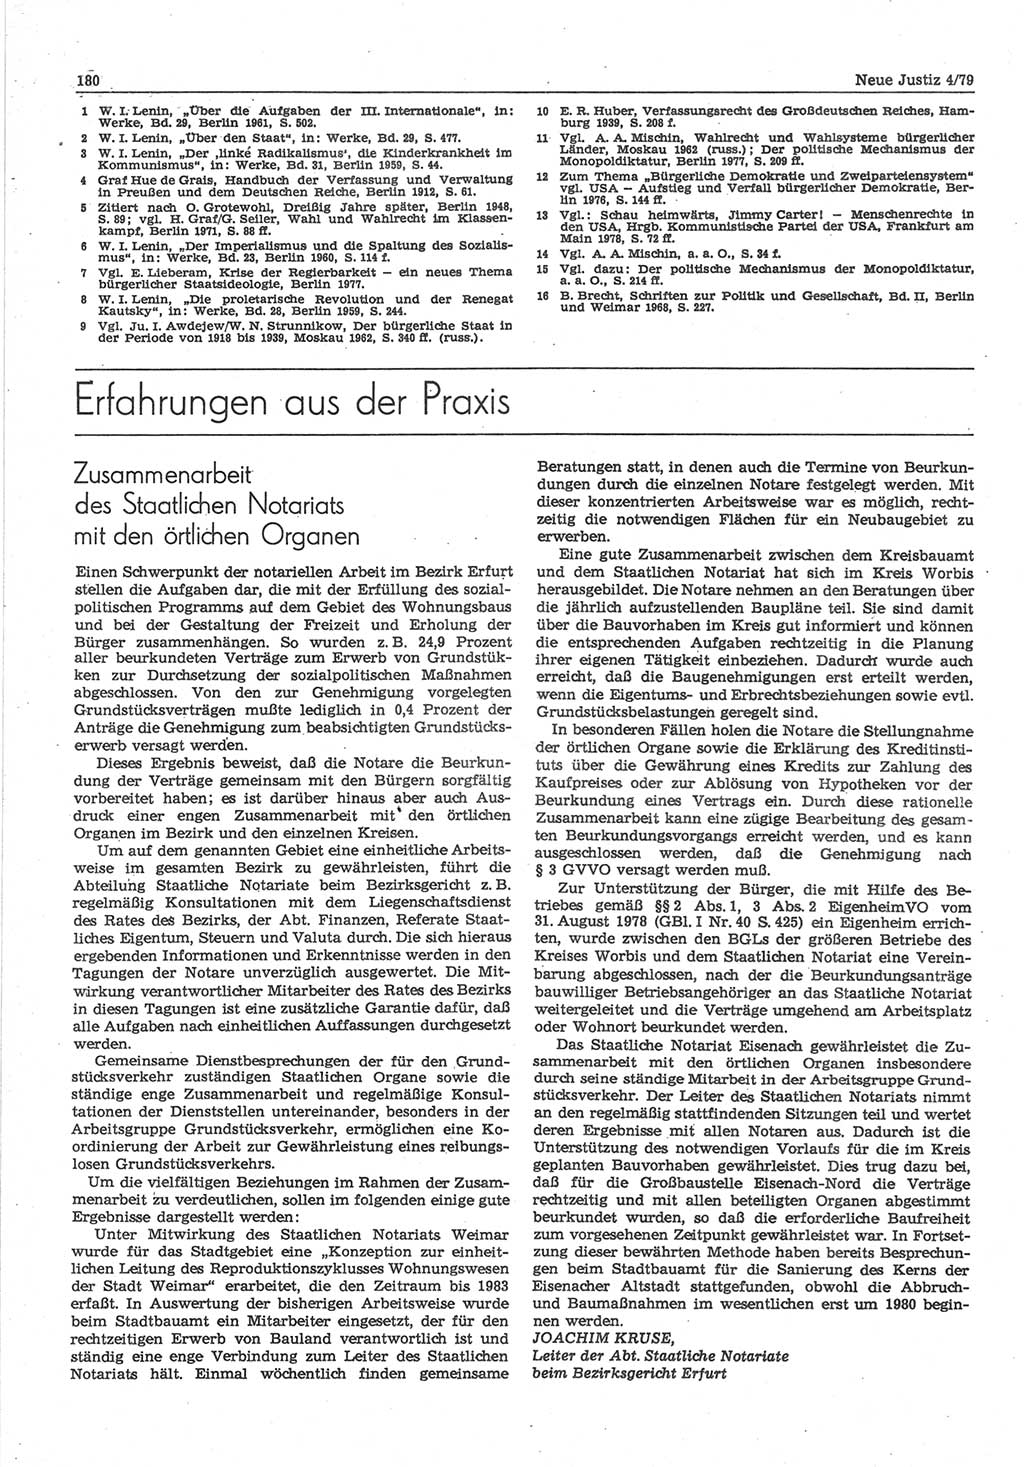 Neue Justiz (NJ), Zeitschrift für sozialistisches Recht und Gesetzlichkeit [Deutsche Demokratische Republik (DDR)], 33. Jahrgang 1979, Seite 180 (NJ DDR 1979, S. 180)